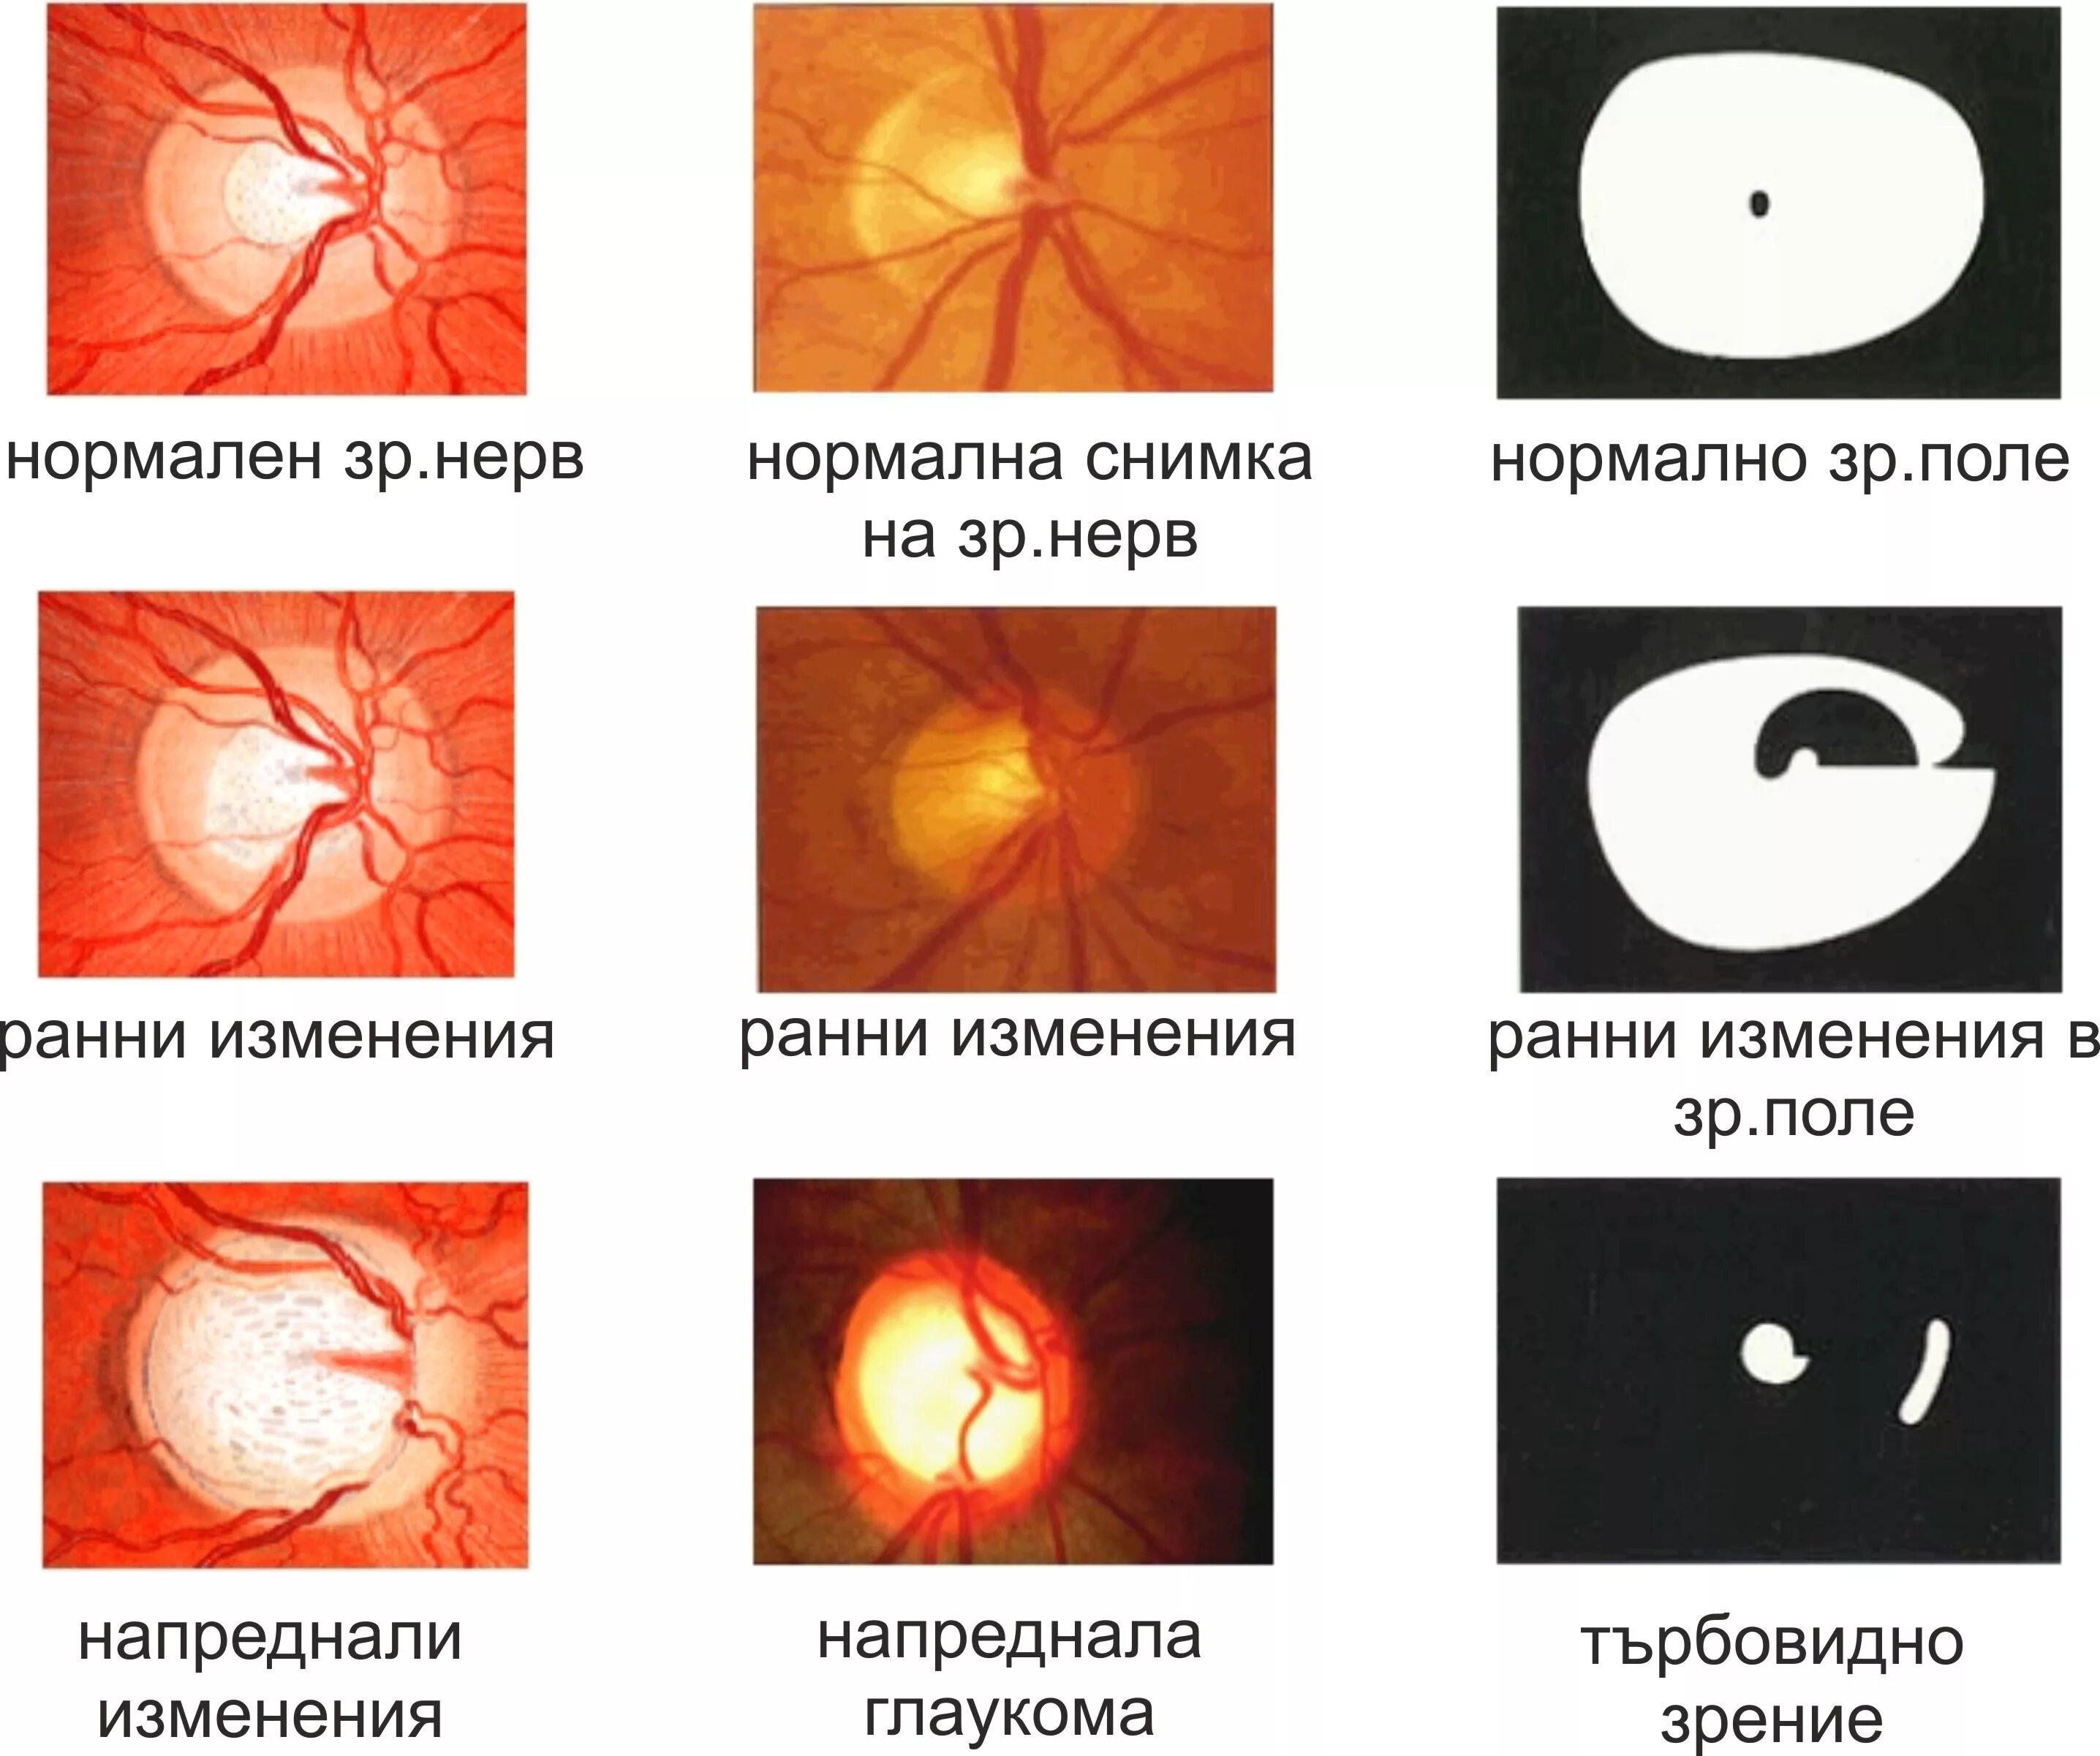 Глаукома поля зрения. Стадии глаукомы. Вернуть зрение при глаукоме